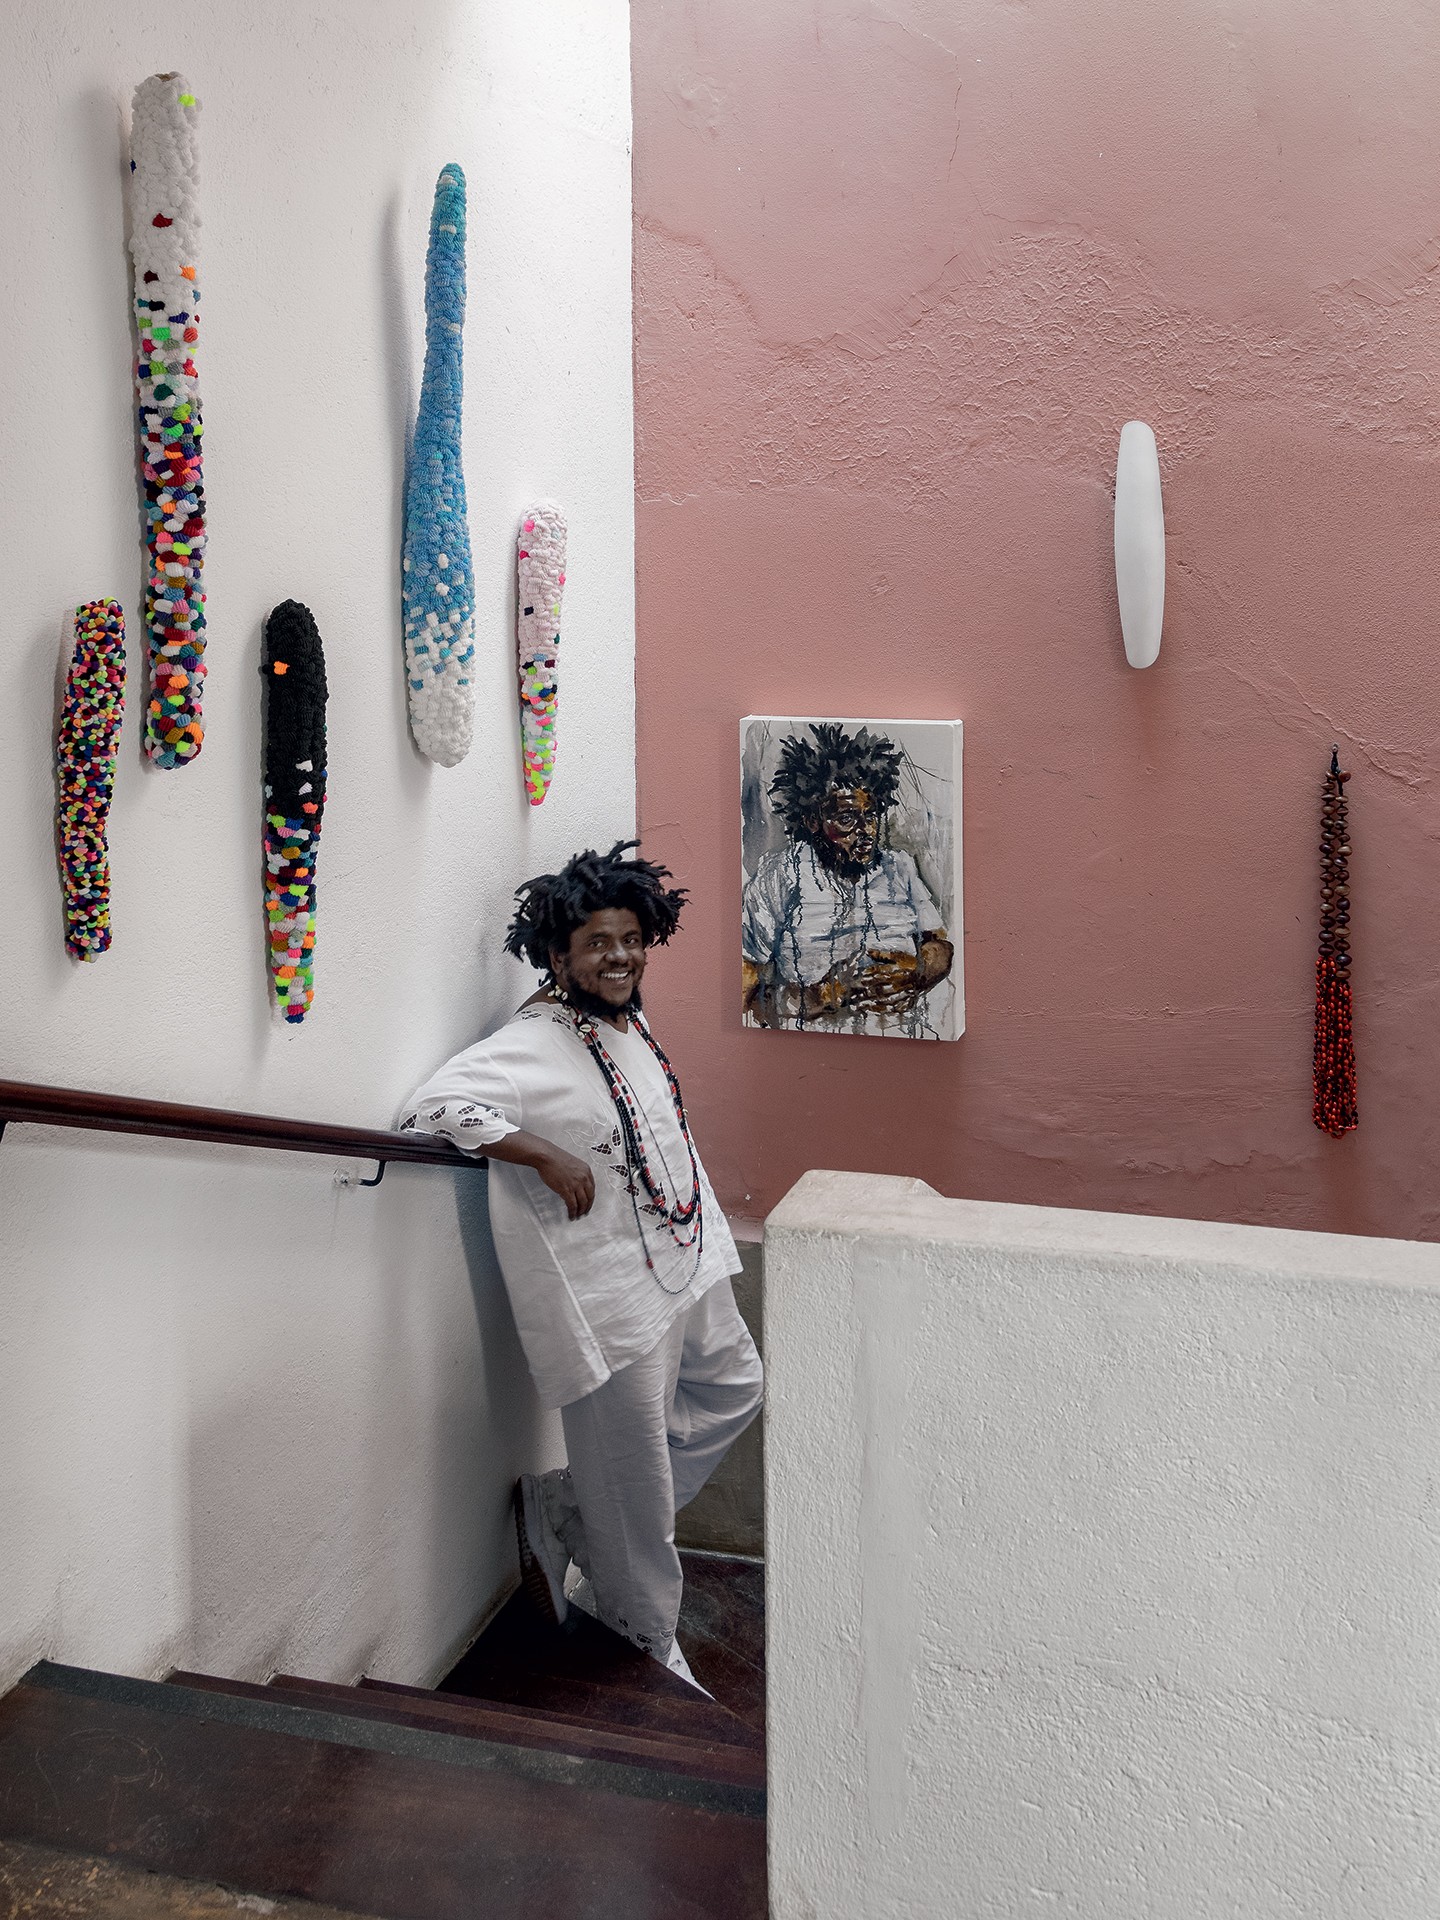 Artista e babalorixá abre as portas de sua casa de 400 m² repleta de obras (Foto: Ruy Teixeira)